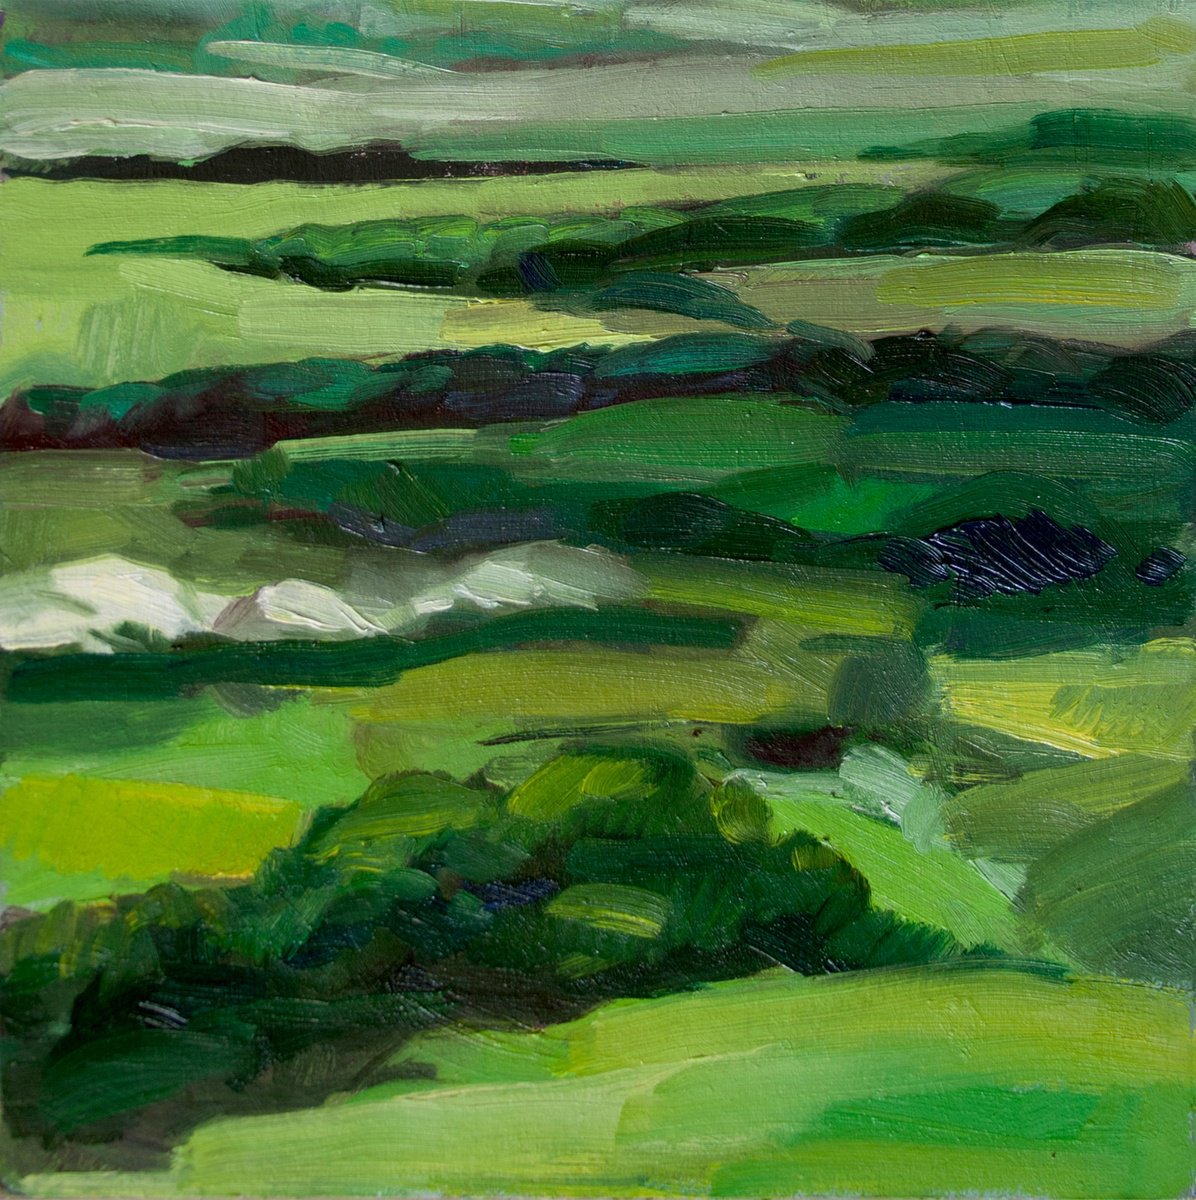 Abstract Green Landscape by Anna Khaninyan